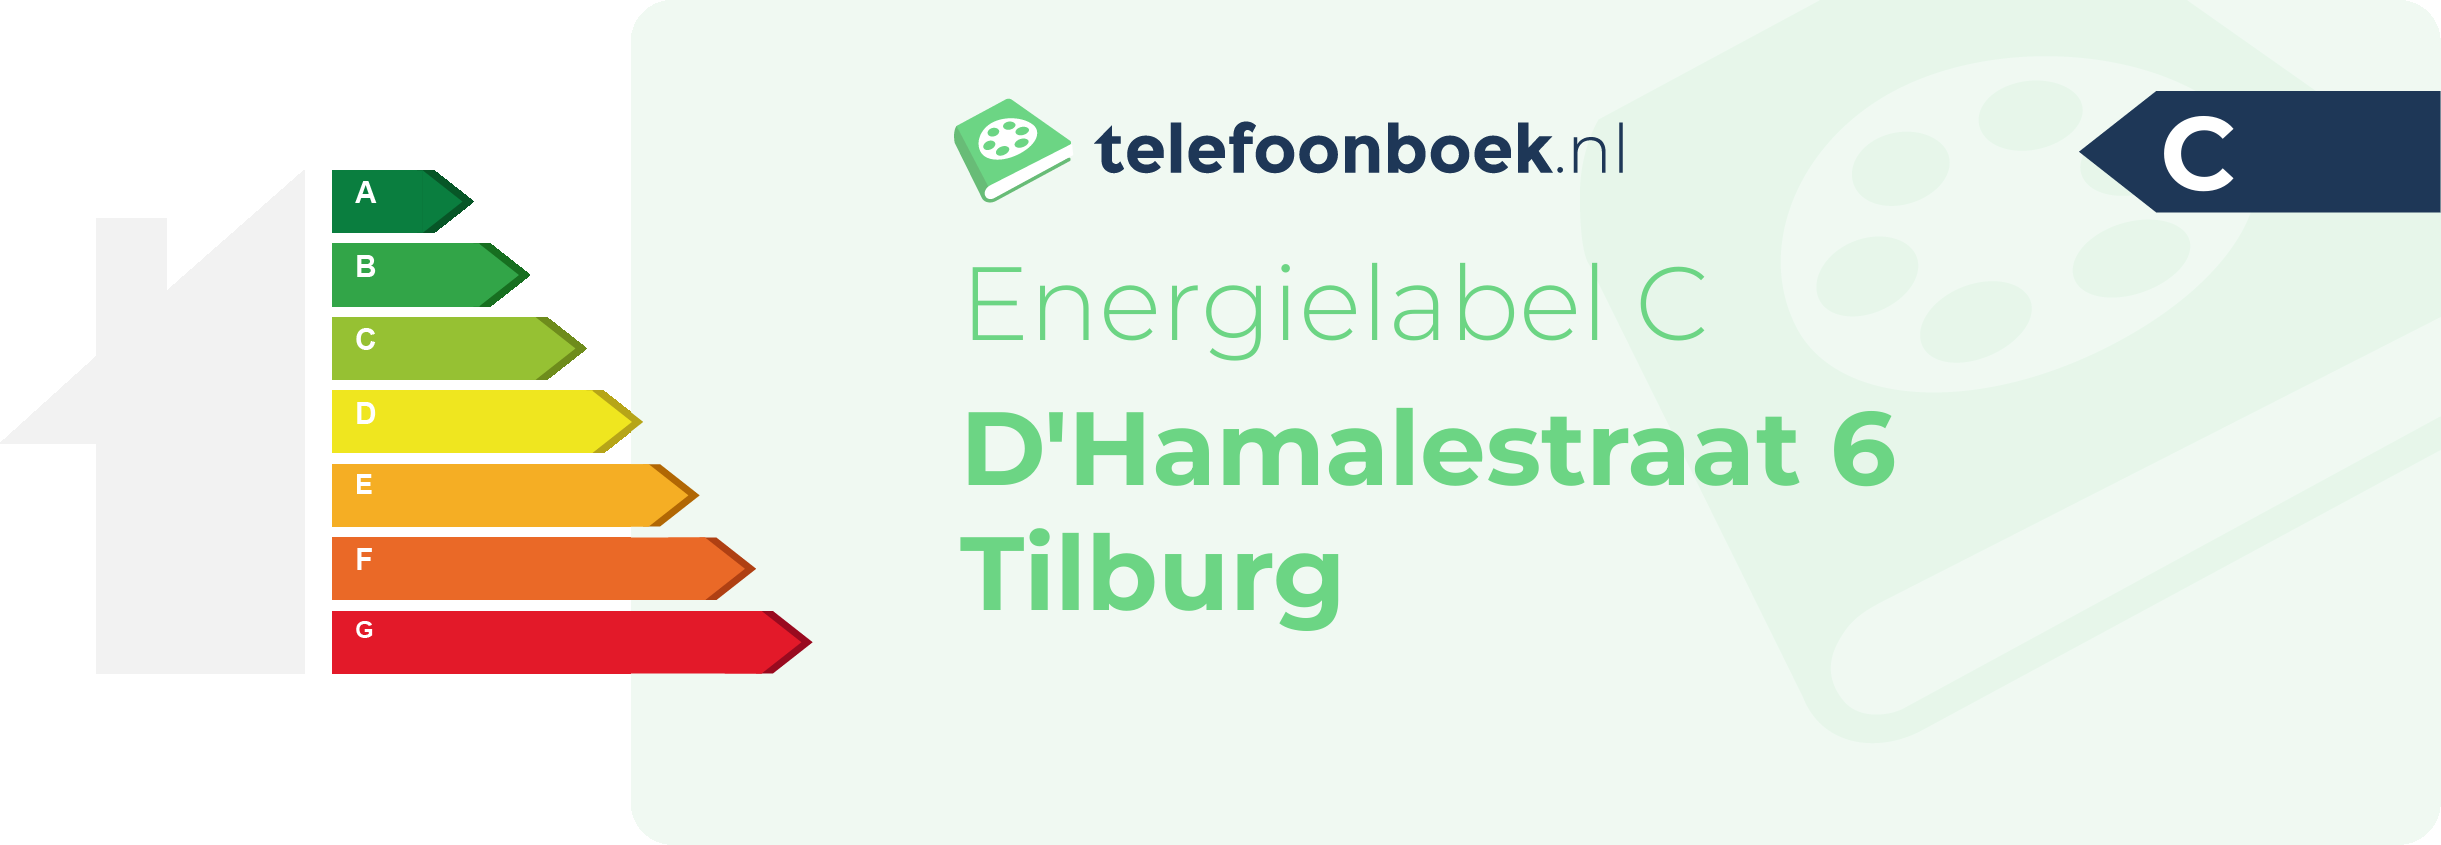 Energielabel D'Hamalestraat 6 Tilburg